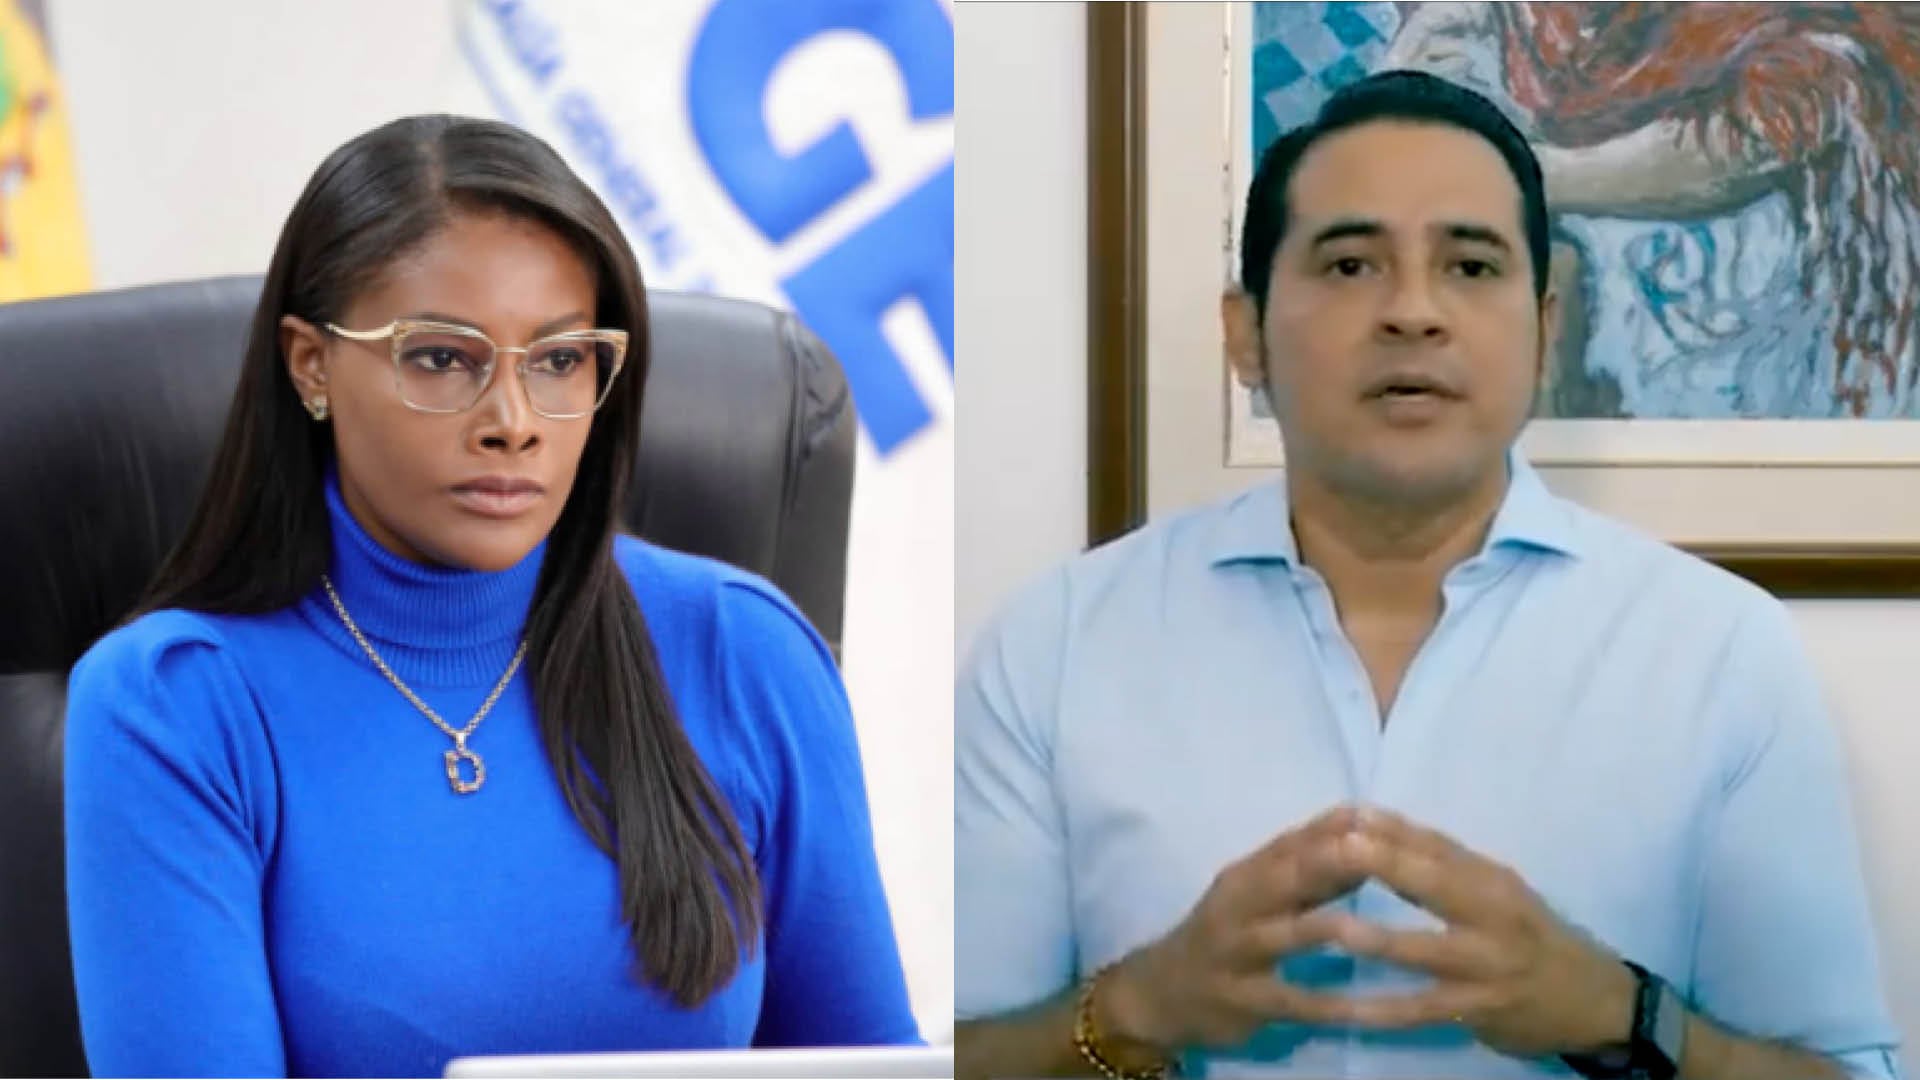 La respuesta de la Fiscalía a las acusaciones de Ronny Aleaga sobre Diana Salazar: “se esconde detrás de un video”.